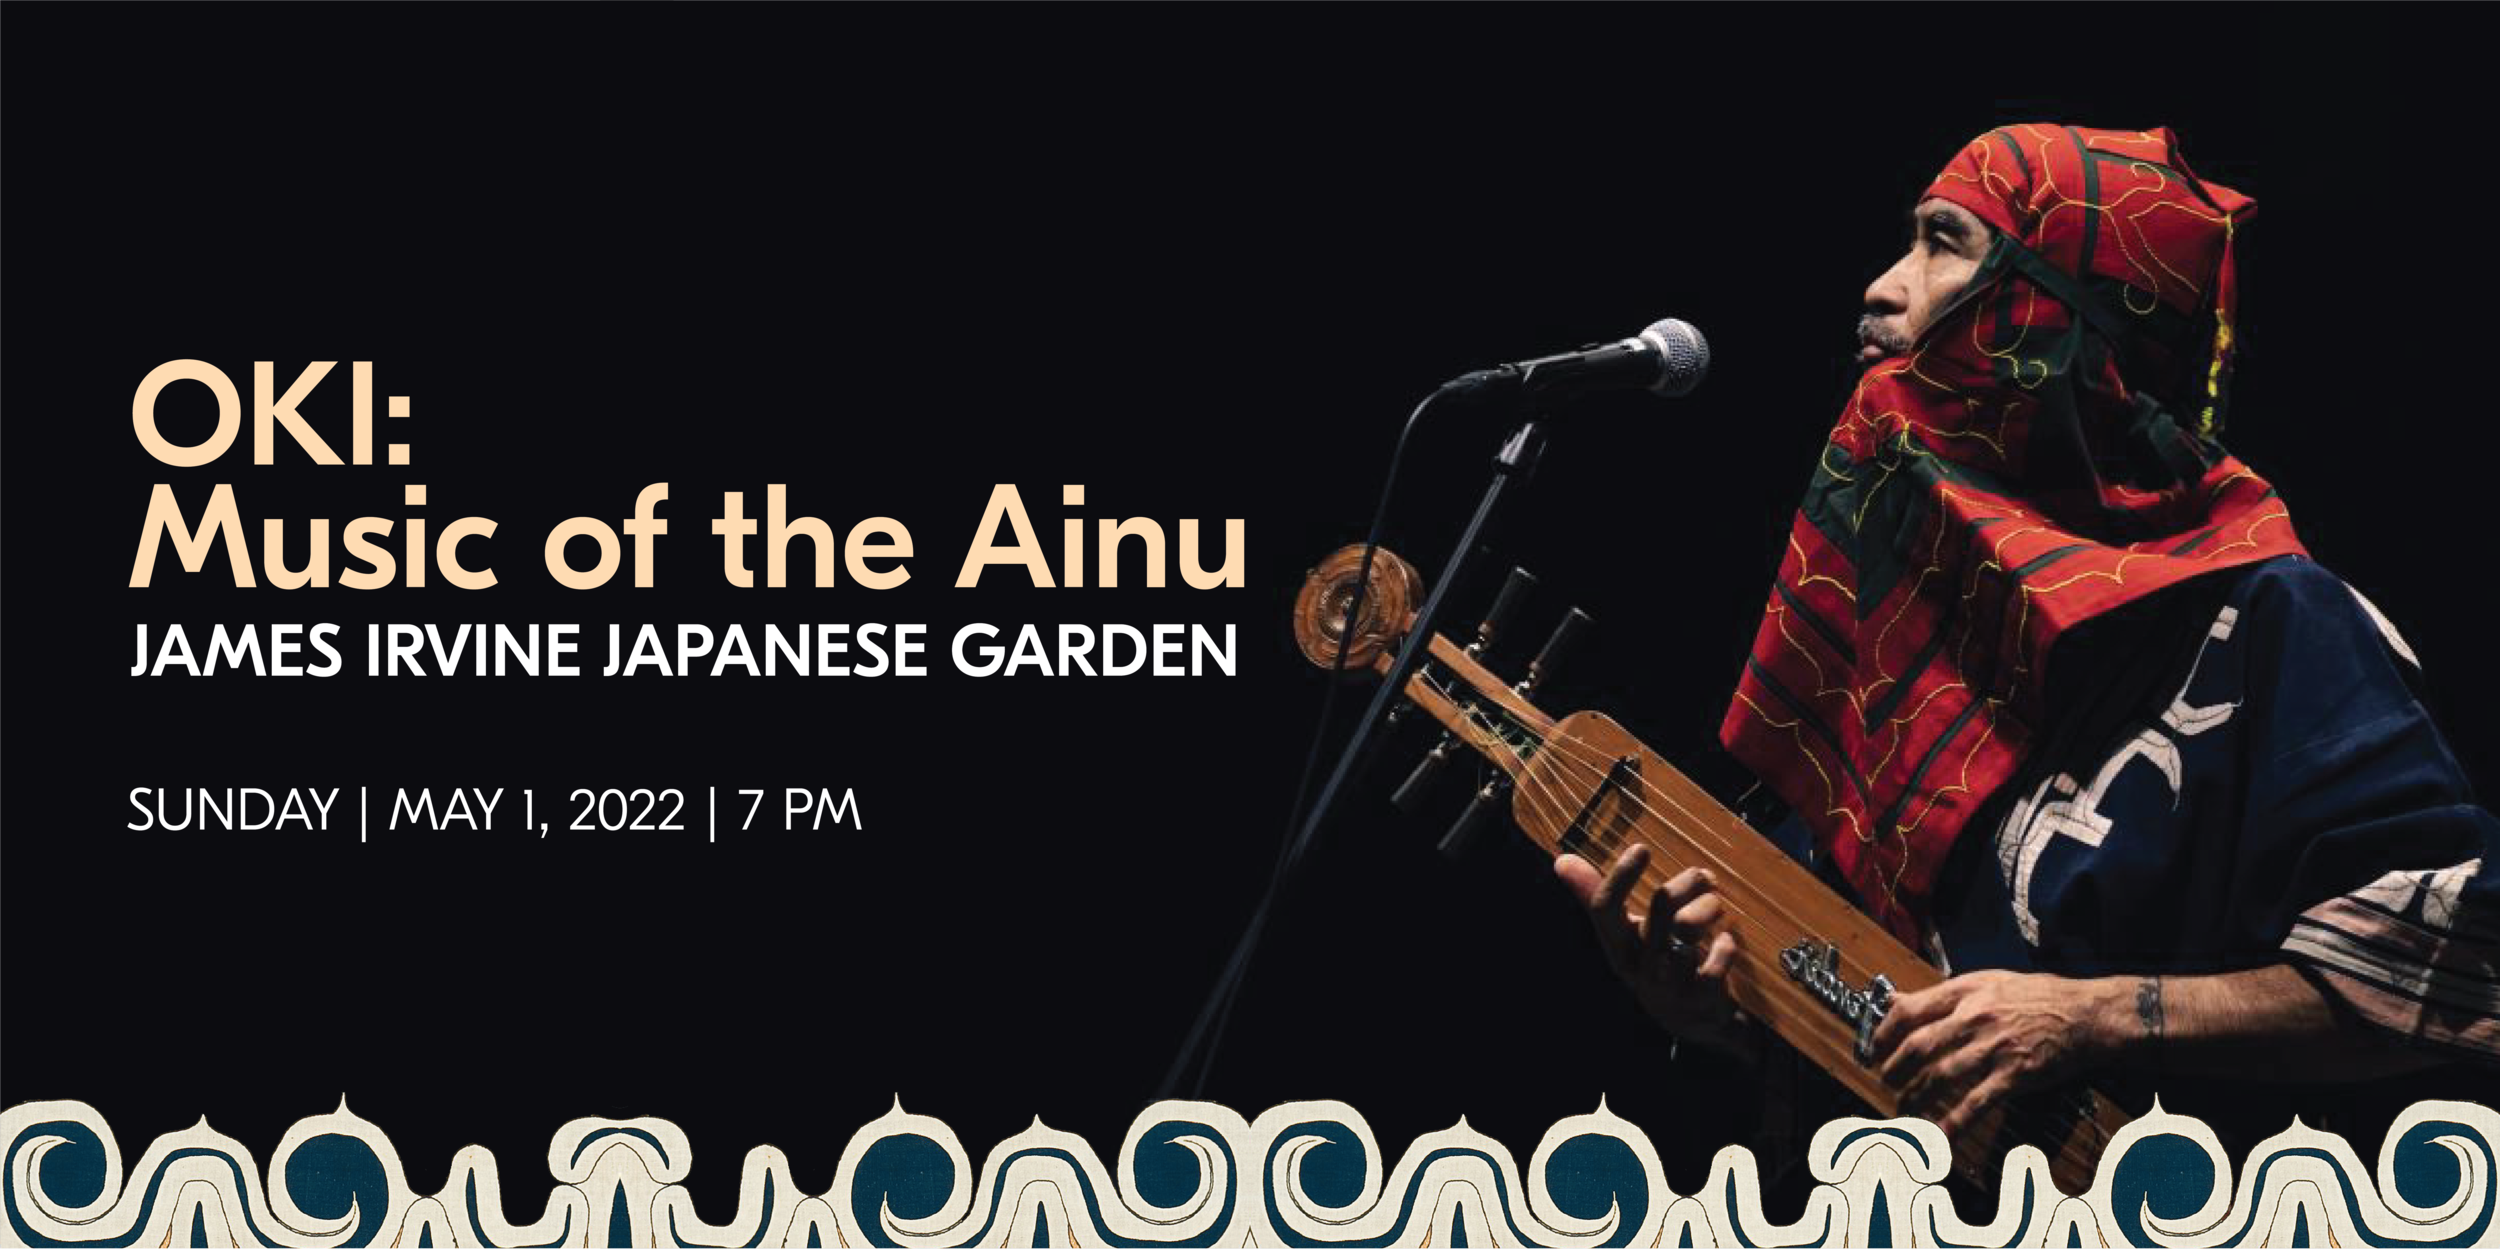 OKI: Music of the Ainu